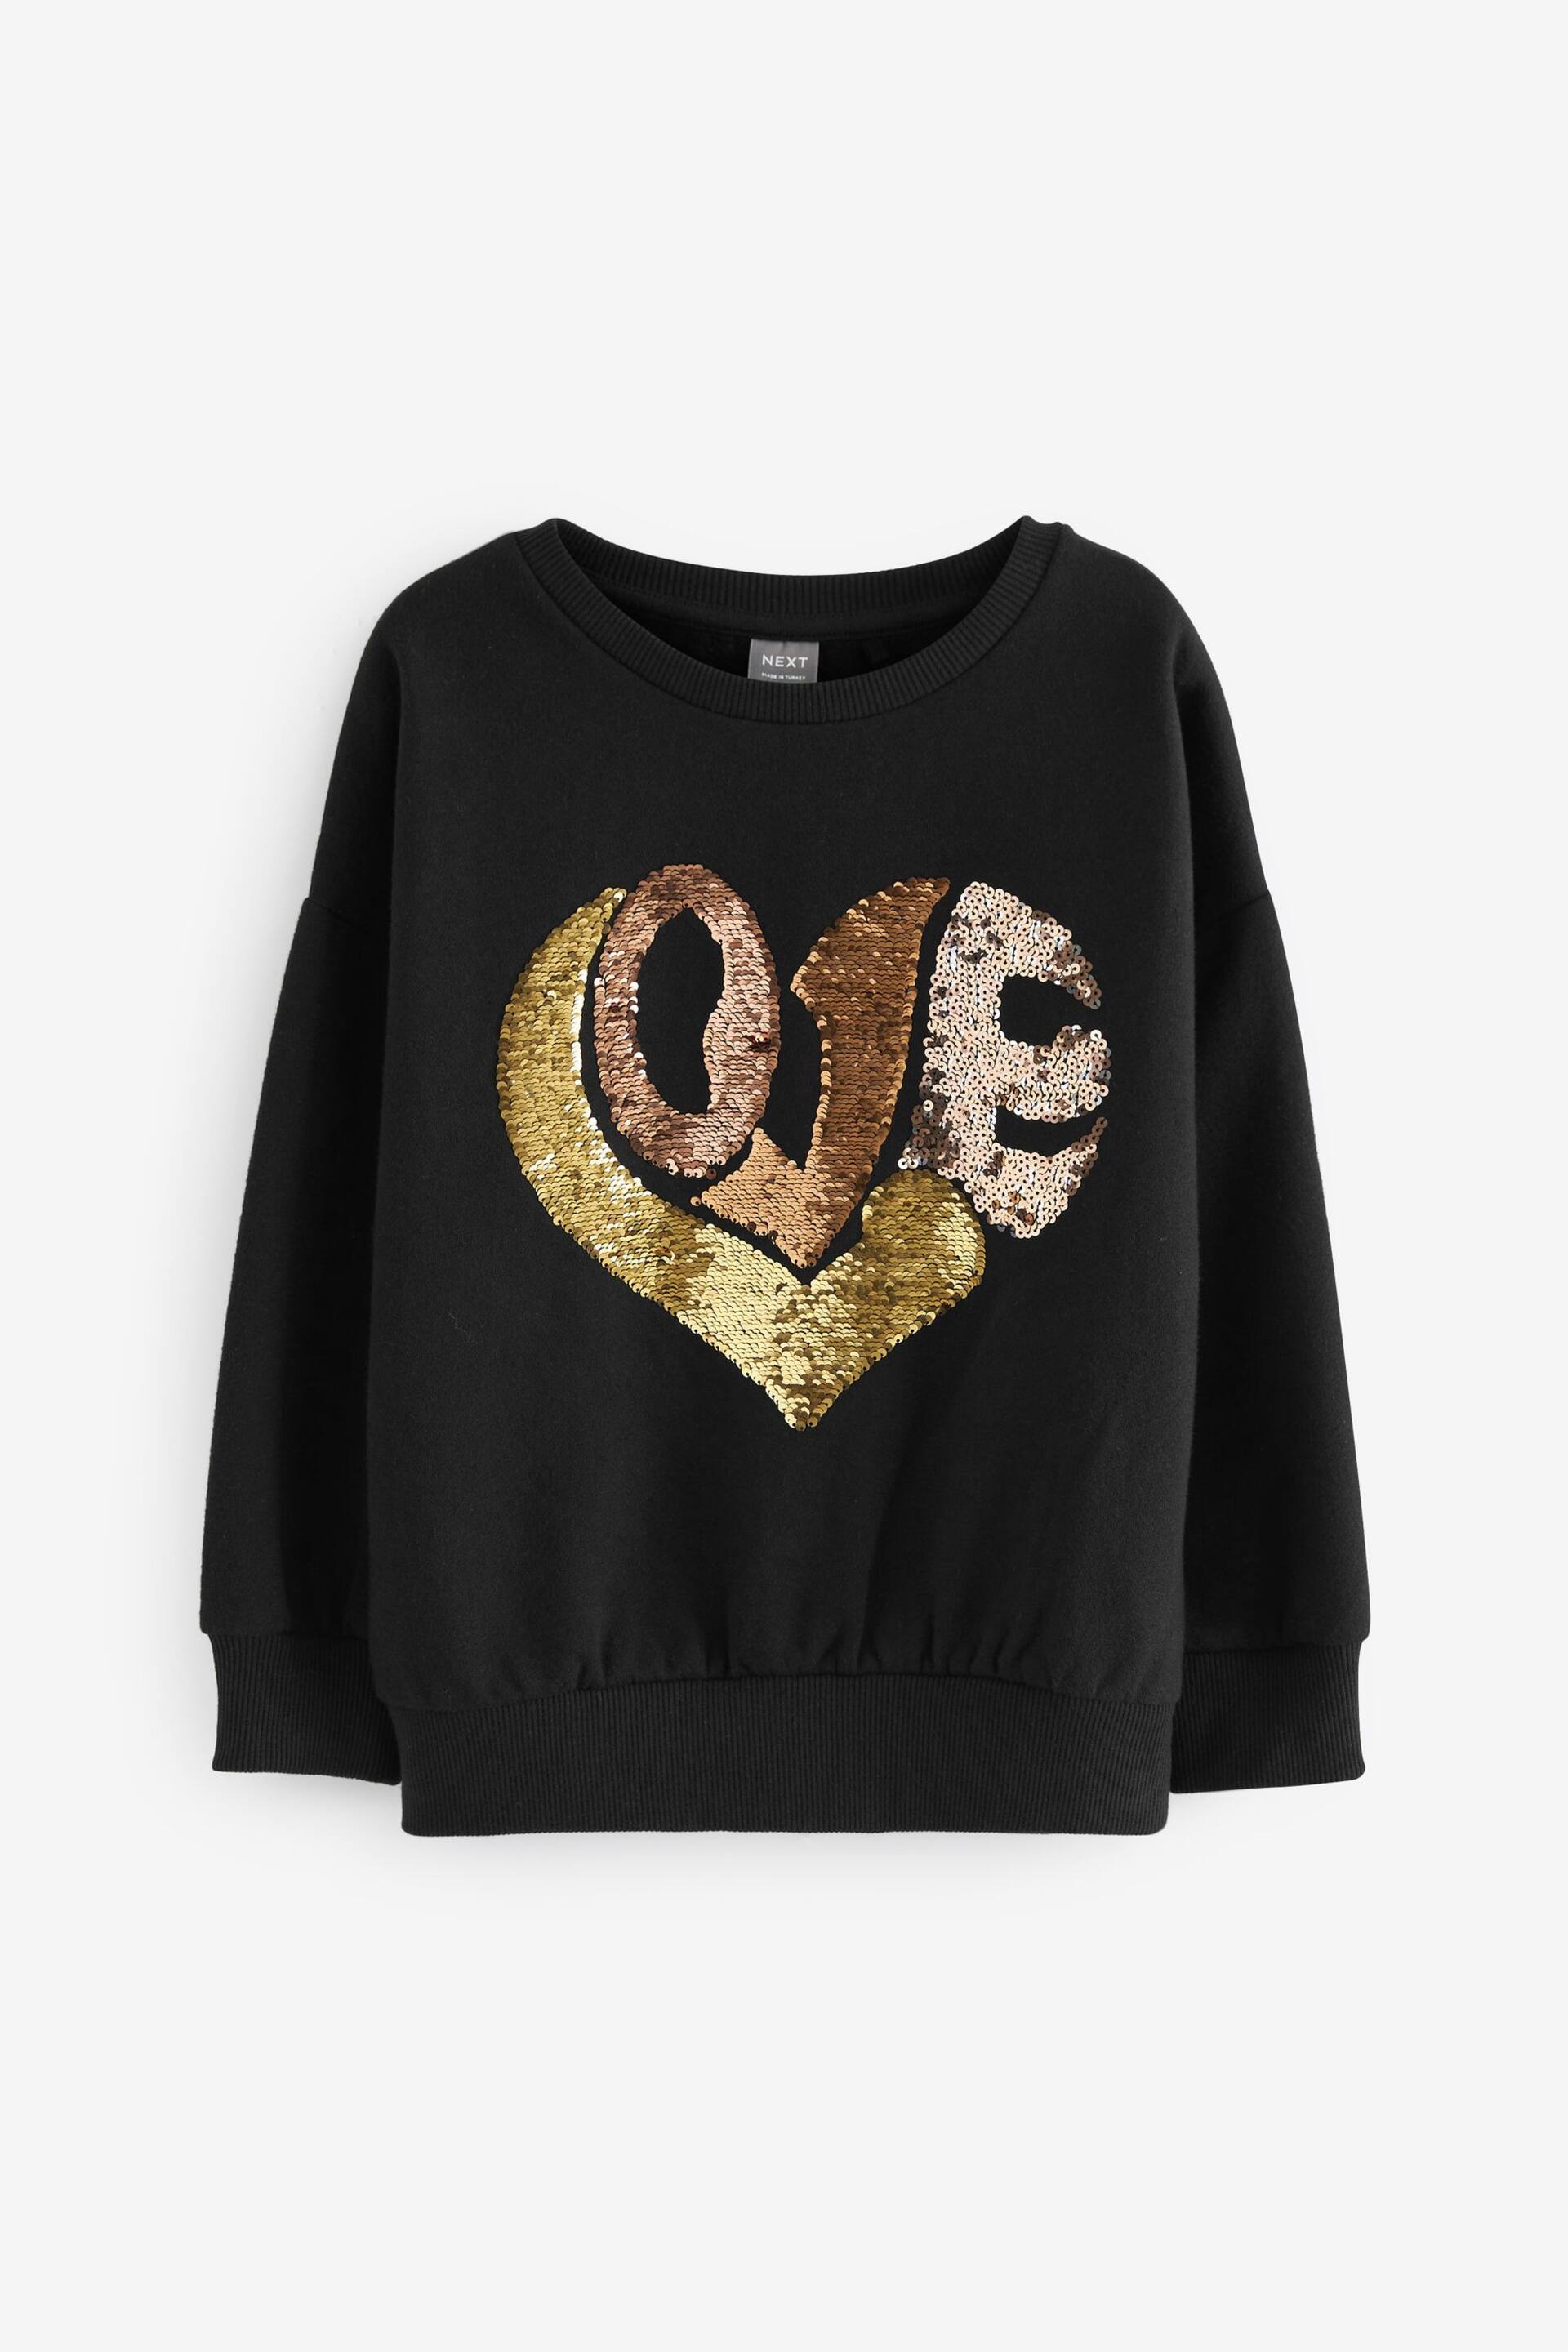 Black/Gold Love Heart Sequin Crew Sweatshirt Top (3-16yrs) - Image 2 of 4